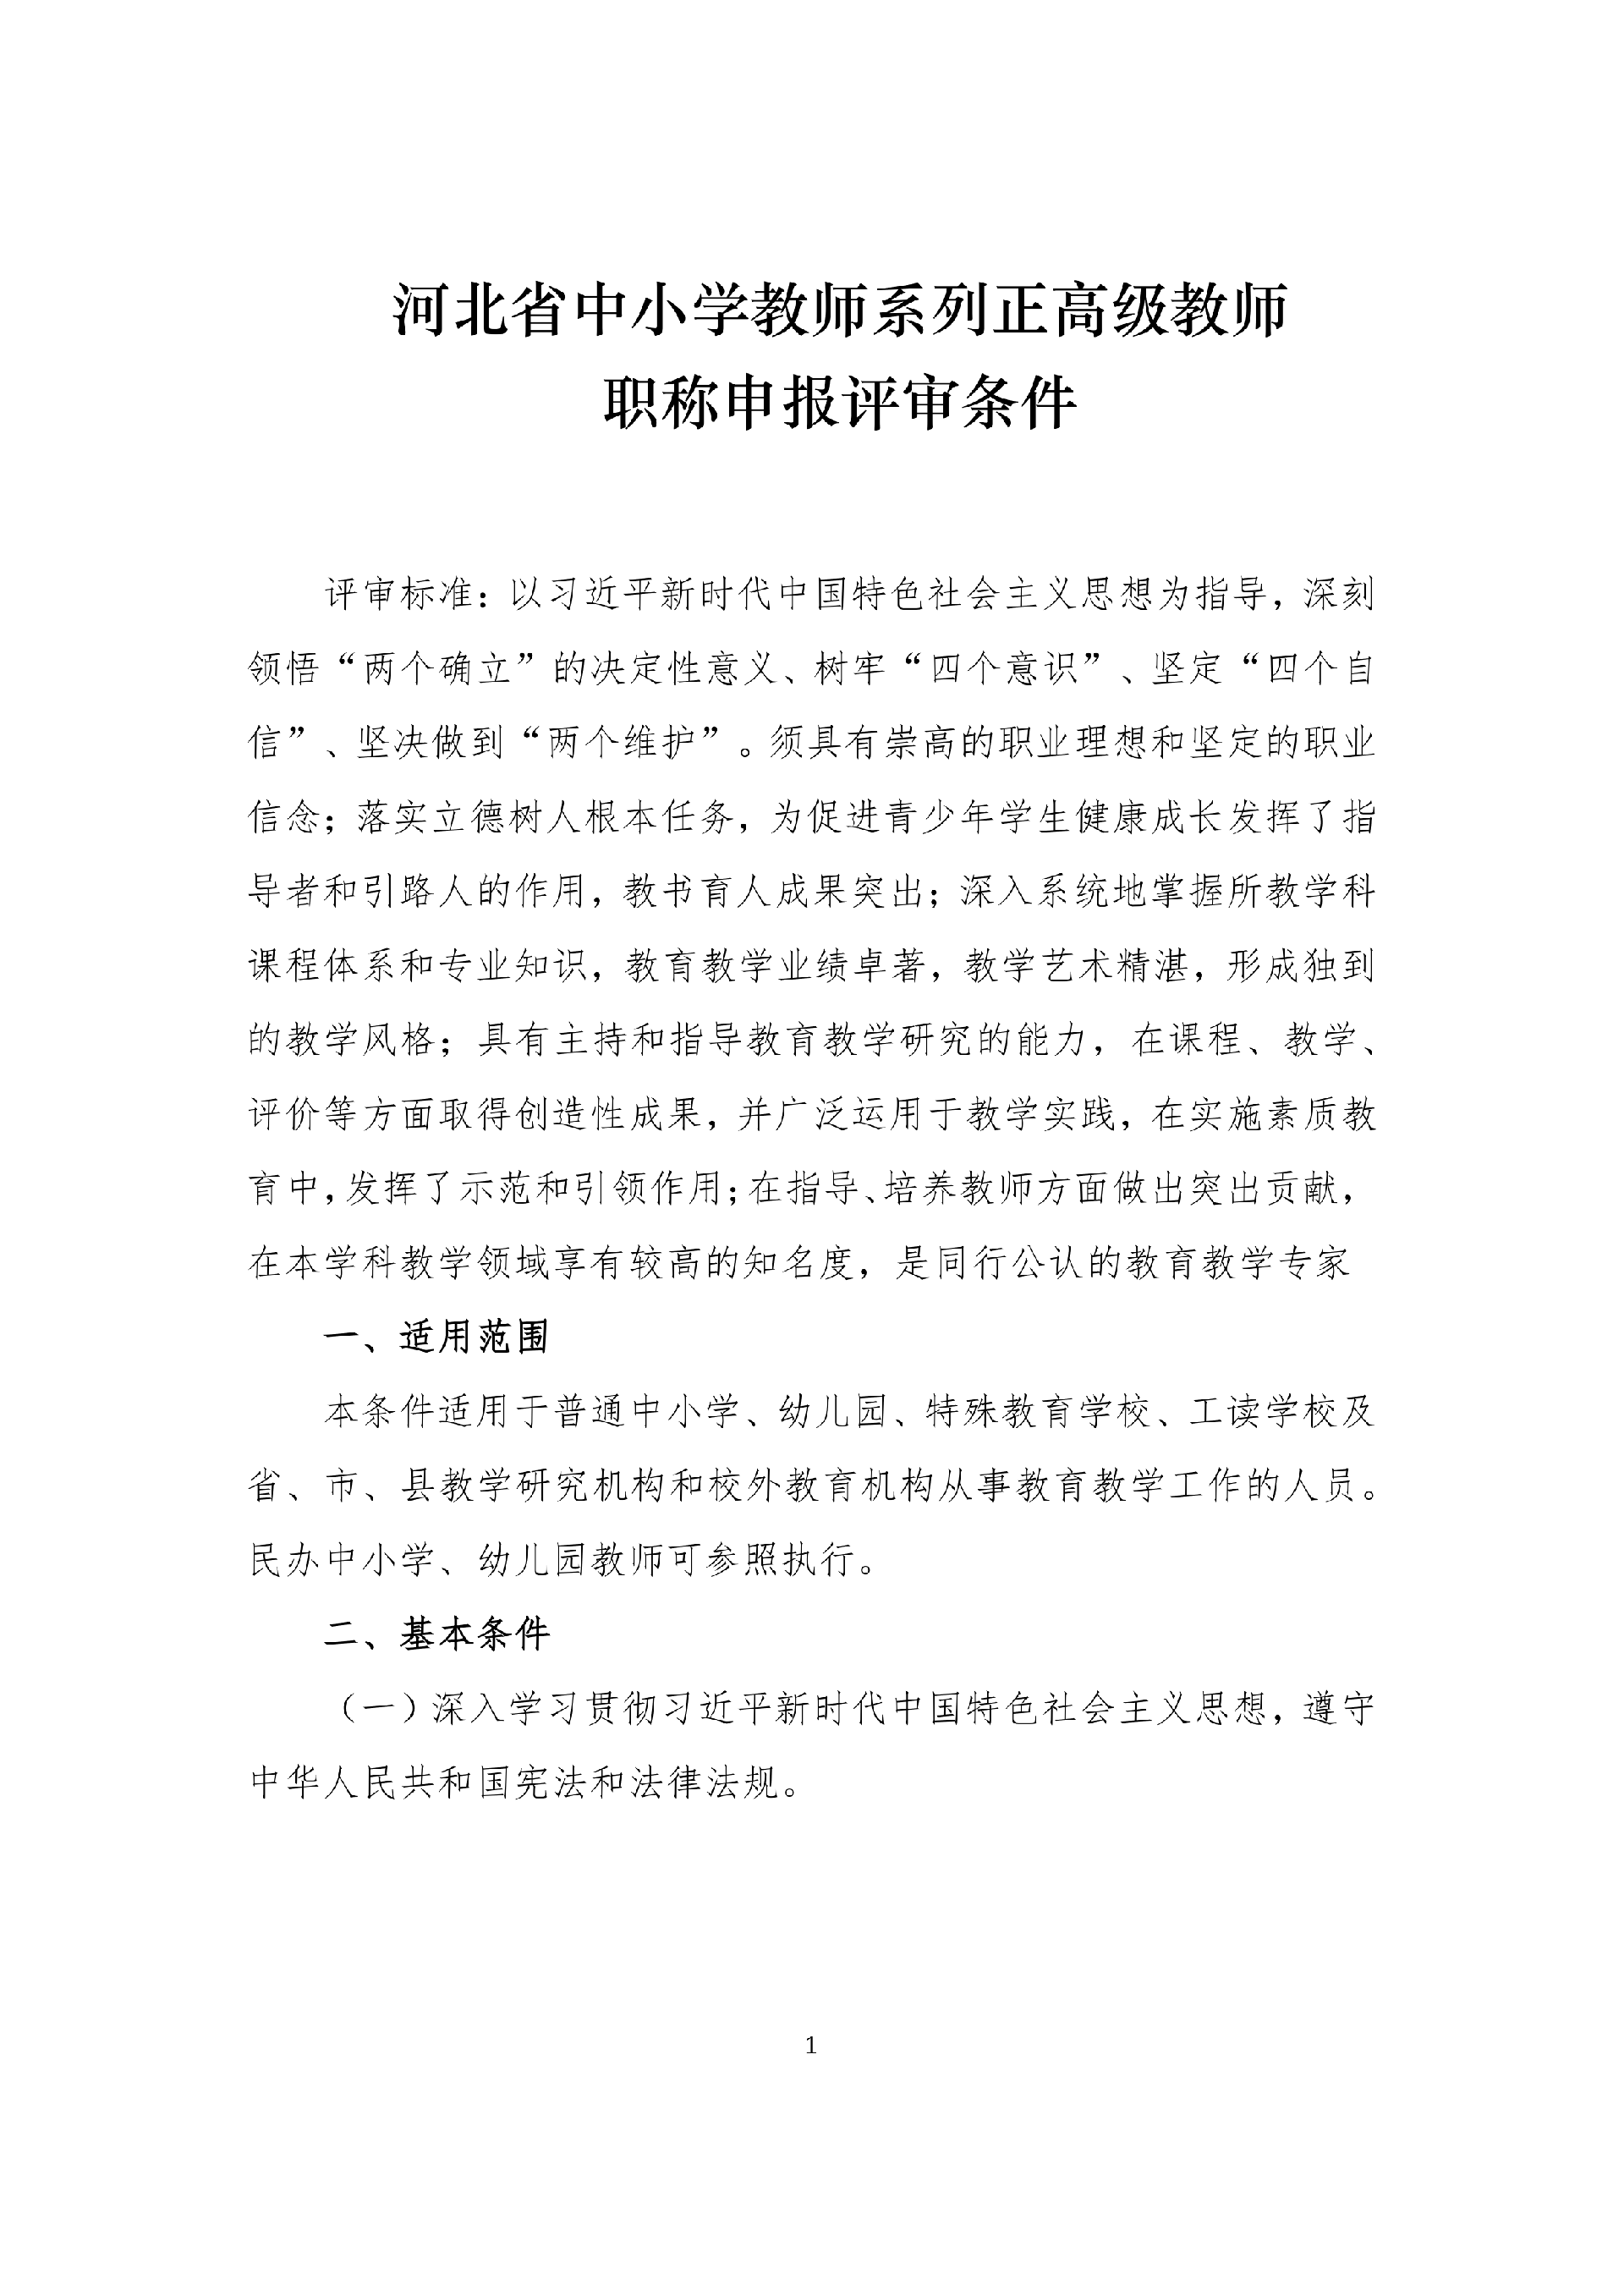 河北省中小学教师系列正高级教师职称申报评审条件_1.png